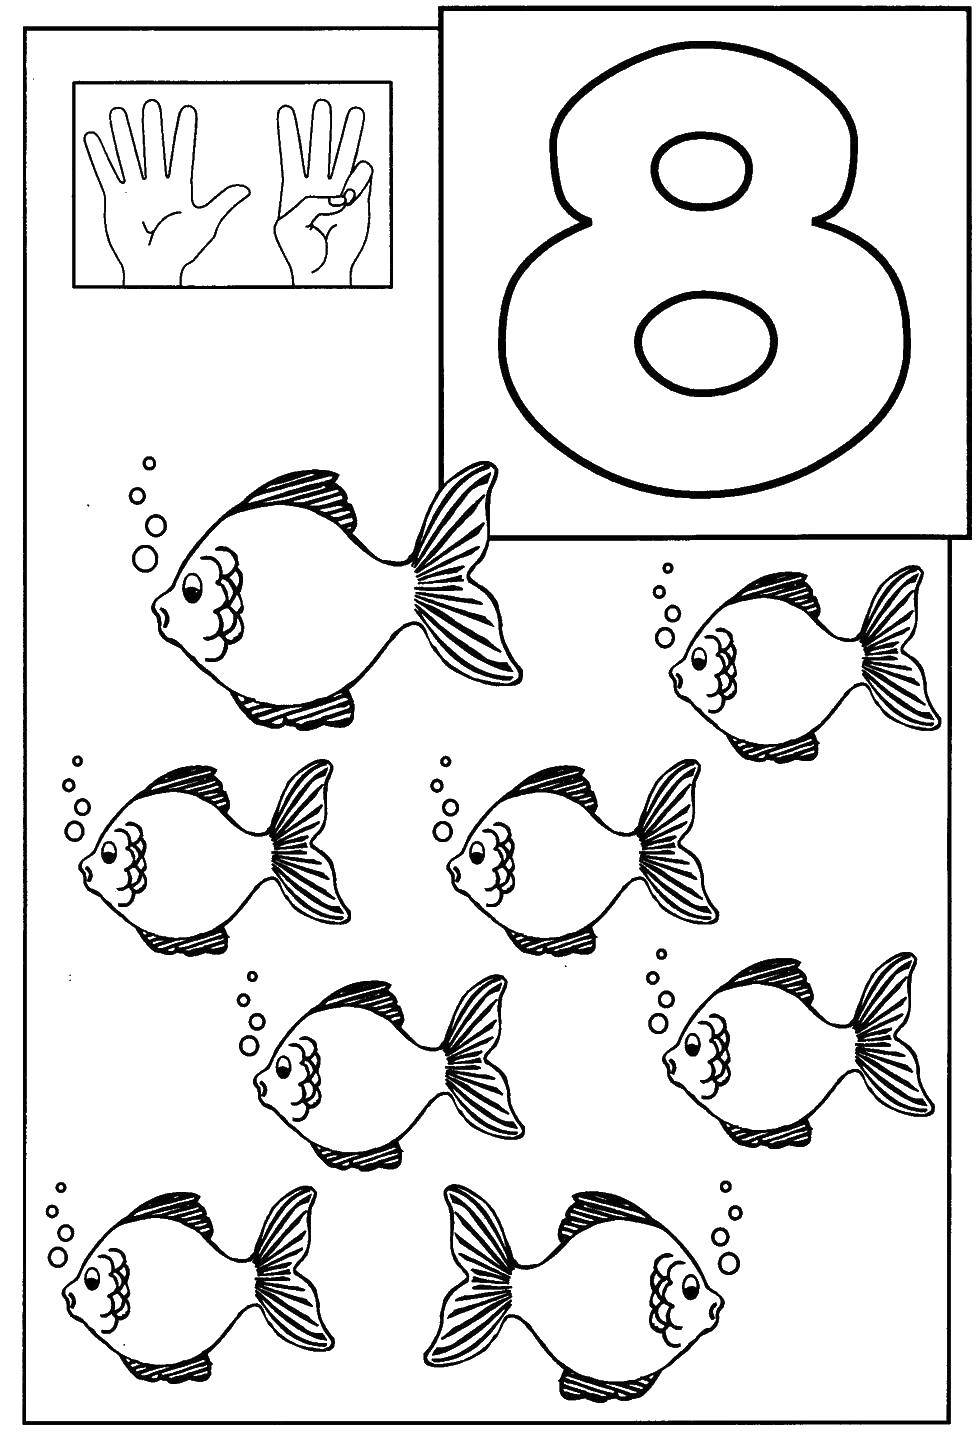 Coloring 8 fish. Category fish. Tags:  fish, fish, 8.